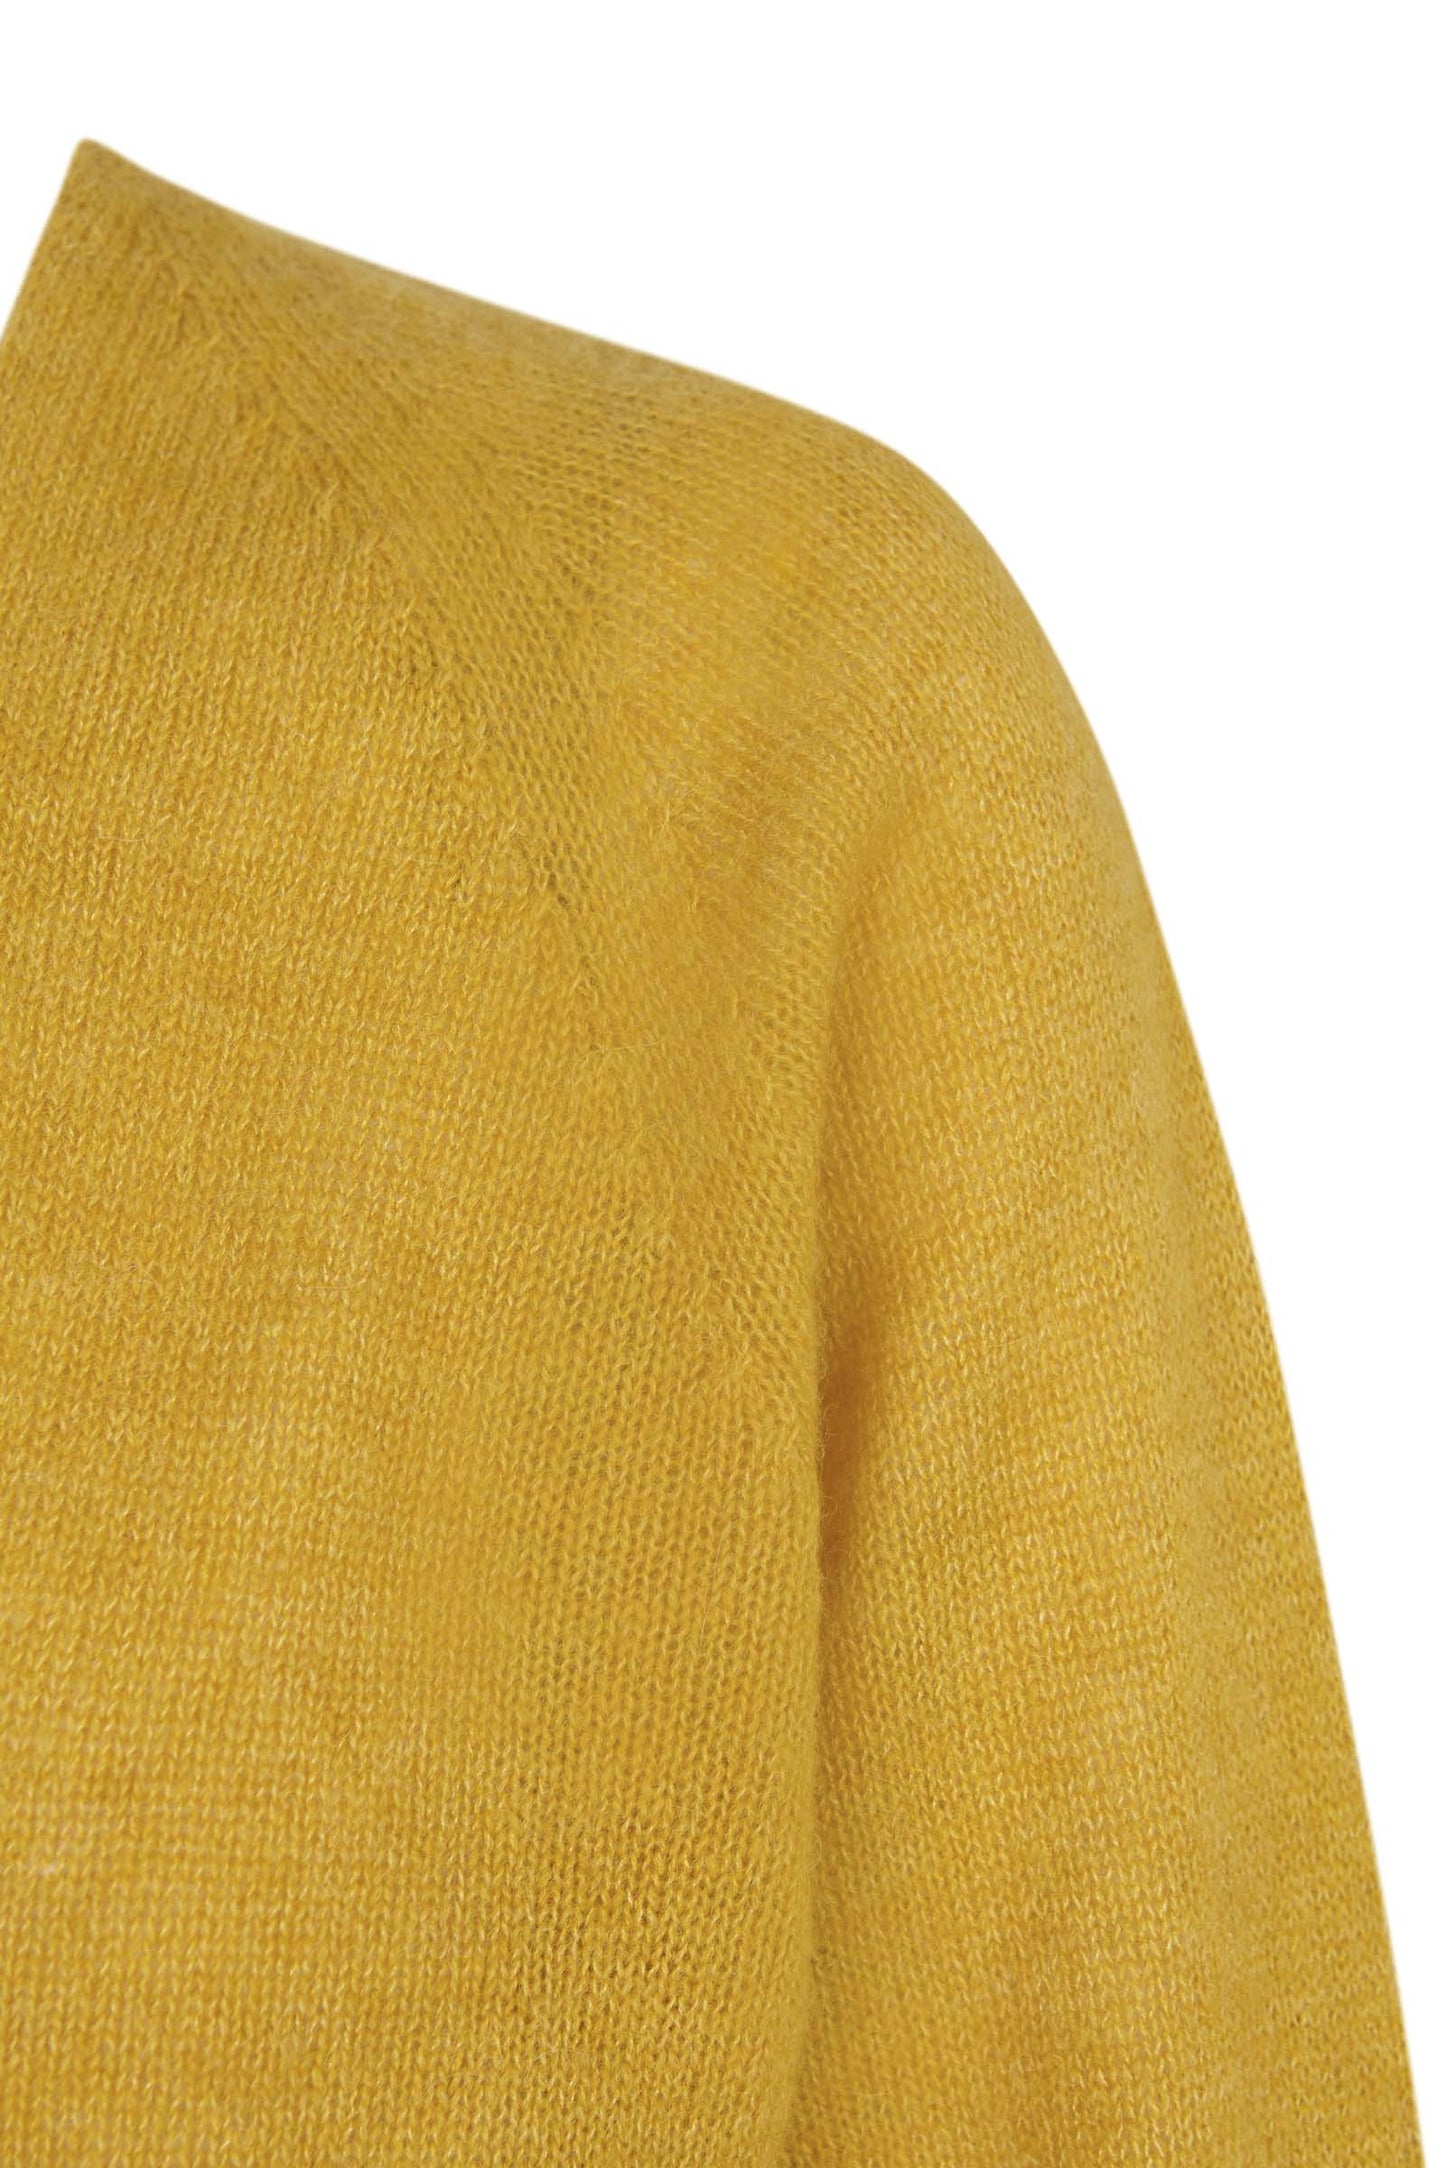 Mar, chaqueta de punto de alpaca, cachemir y seda amarillo